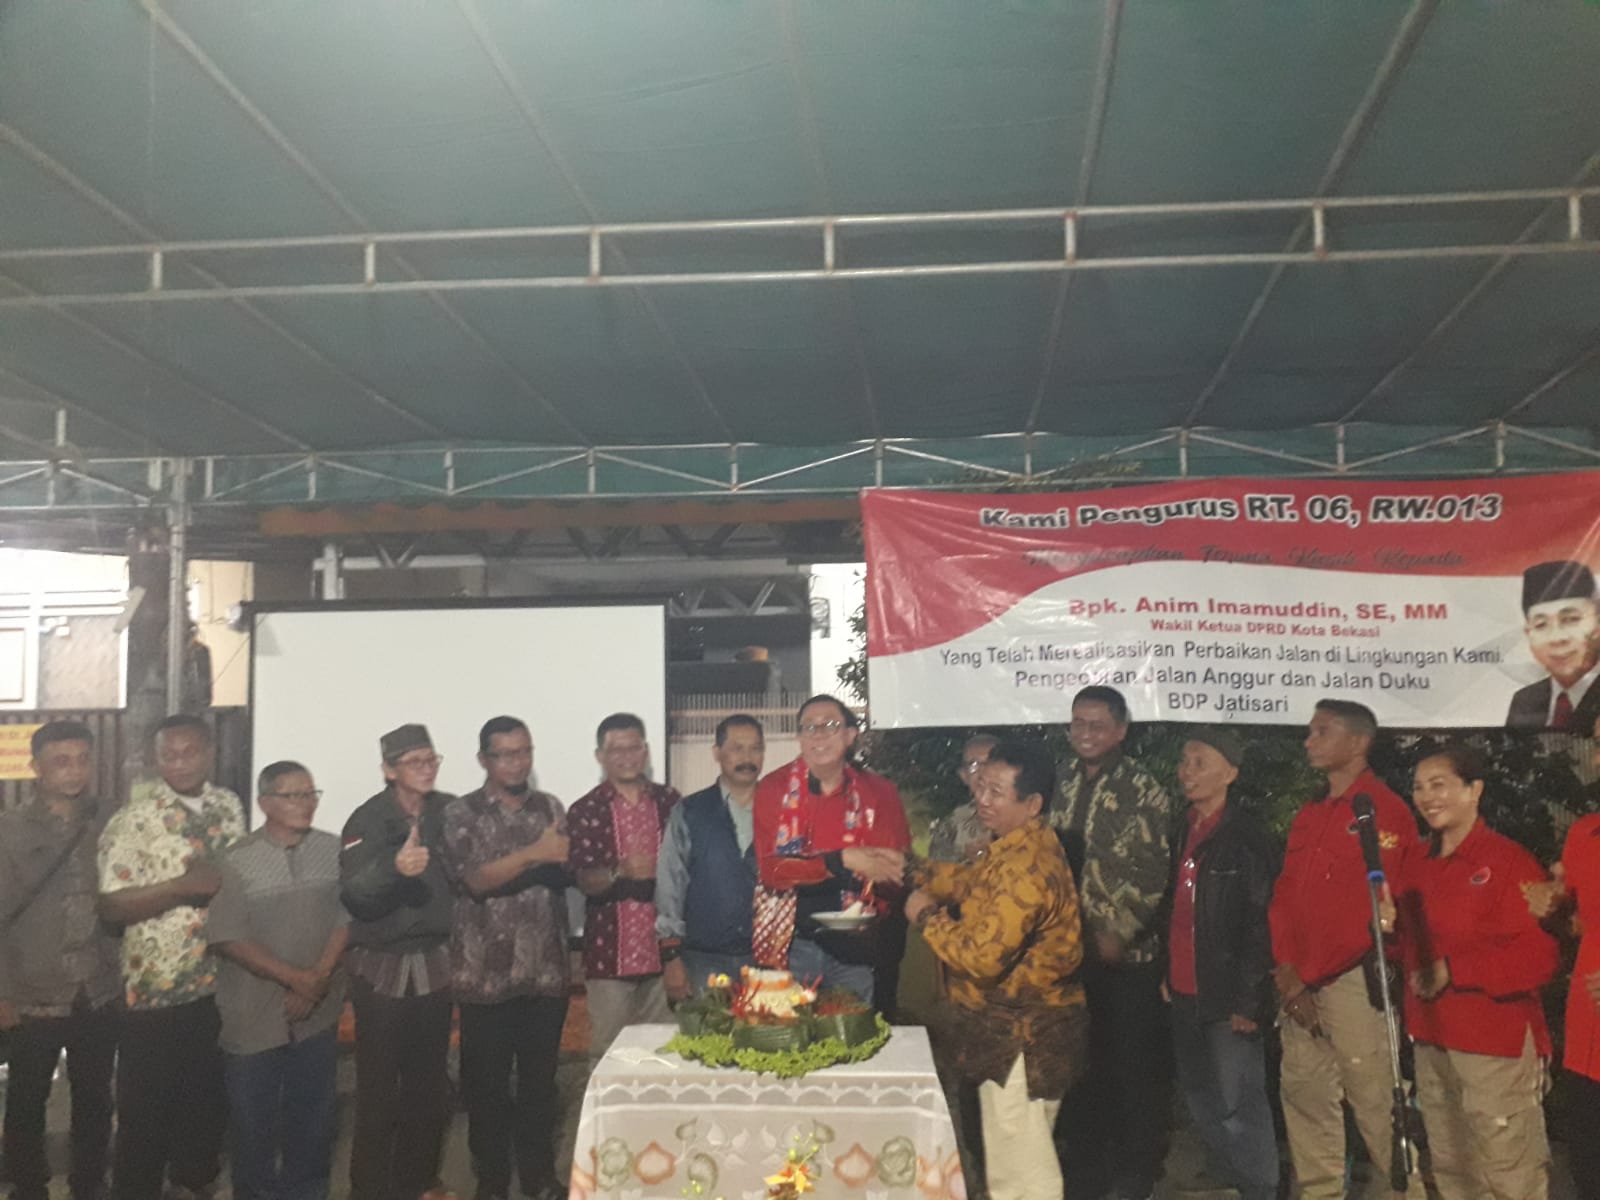 Anim Imamuddin menghadiri tasyakuran di Perum BDP Jatisari Jatiasih